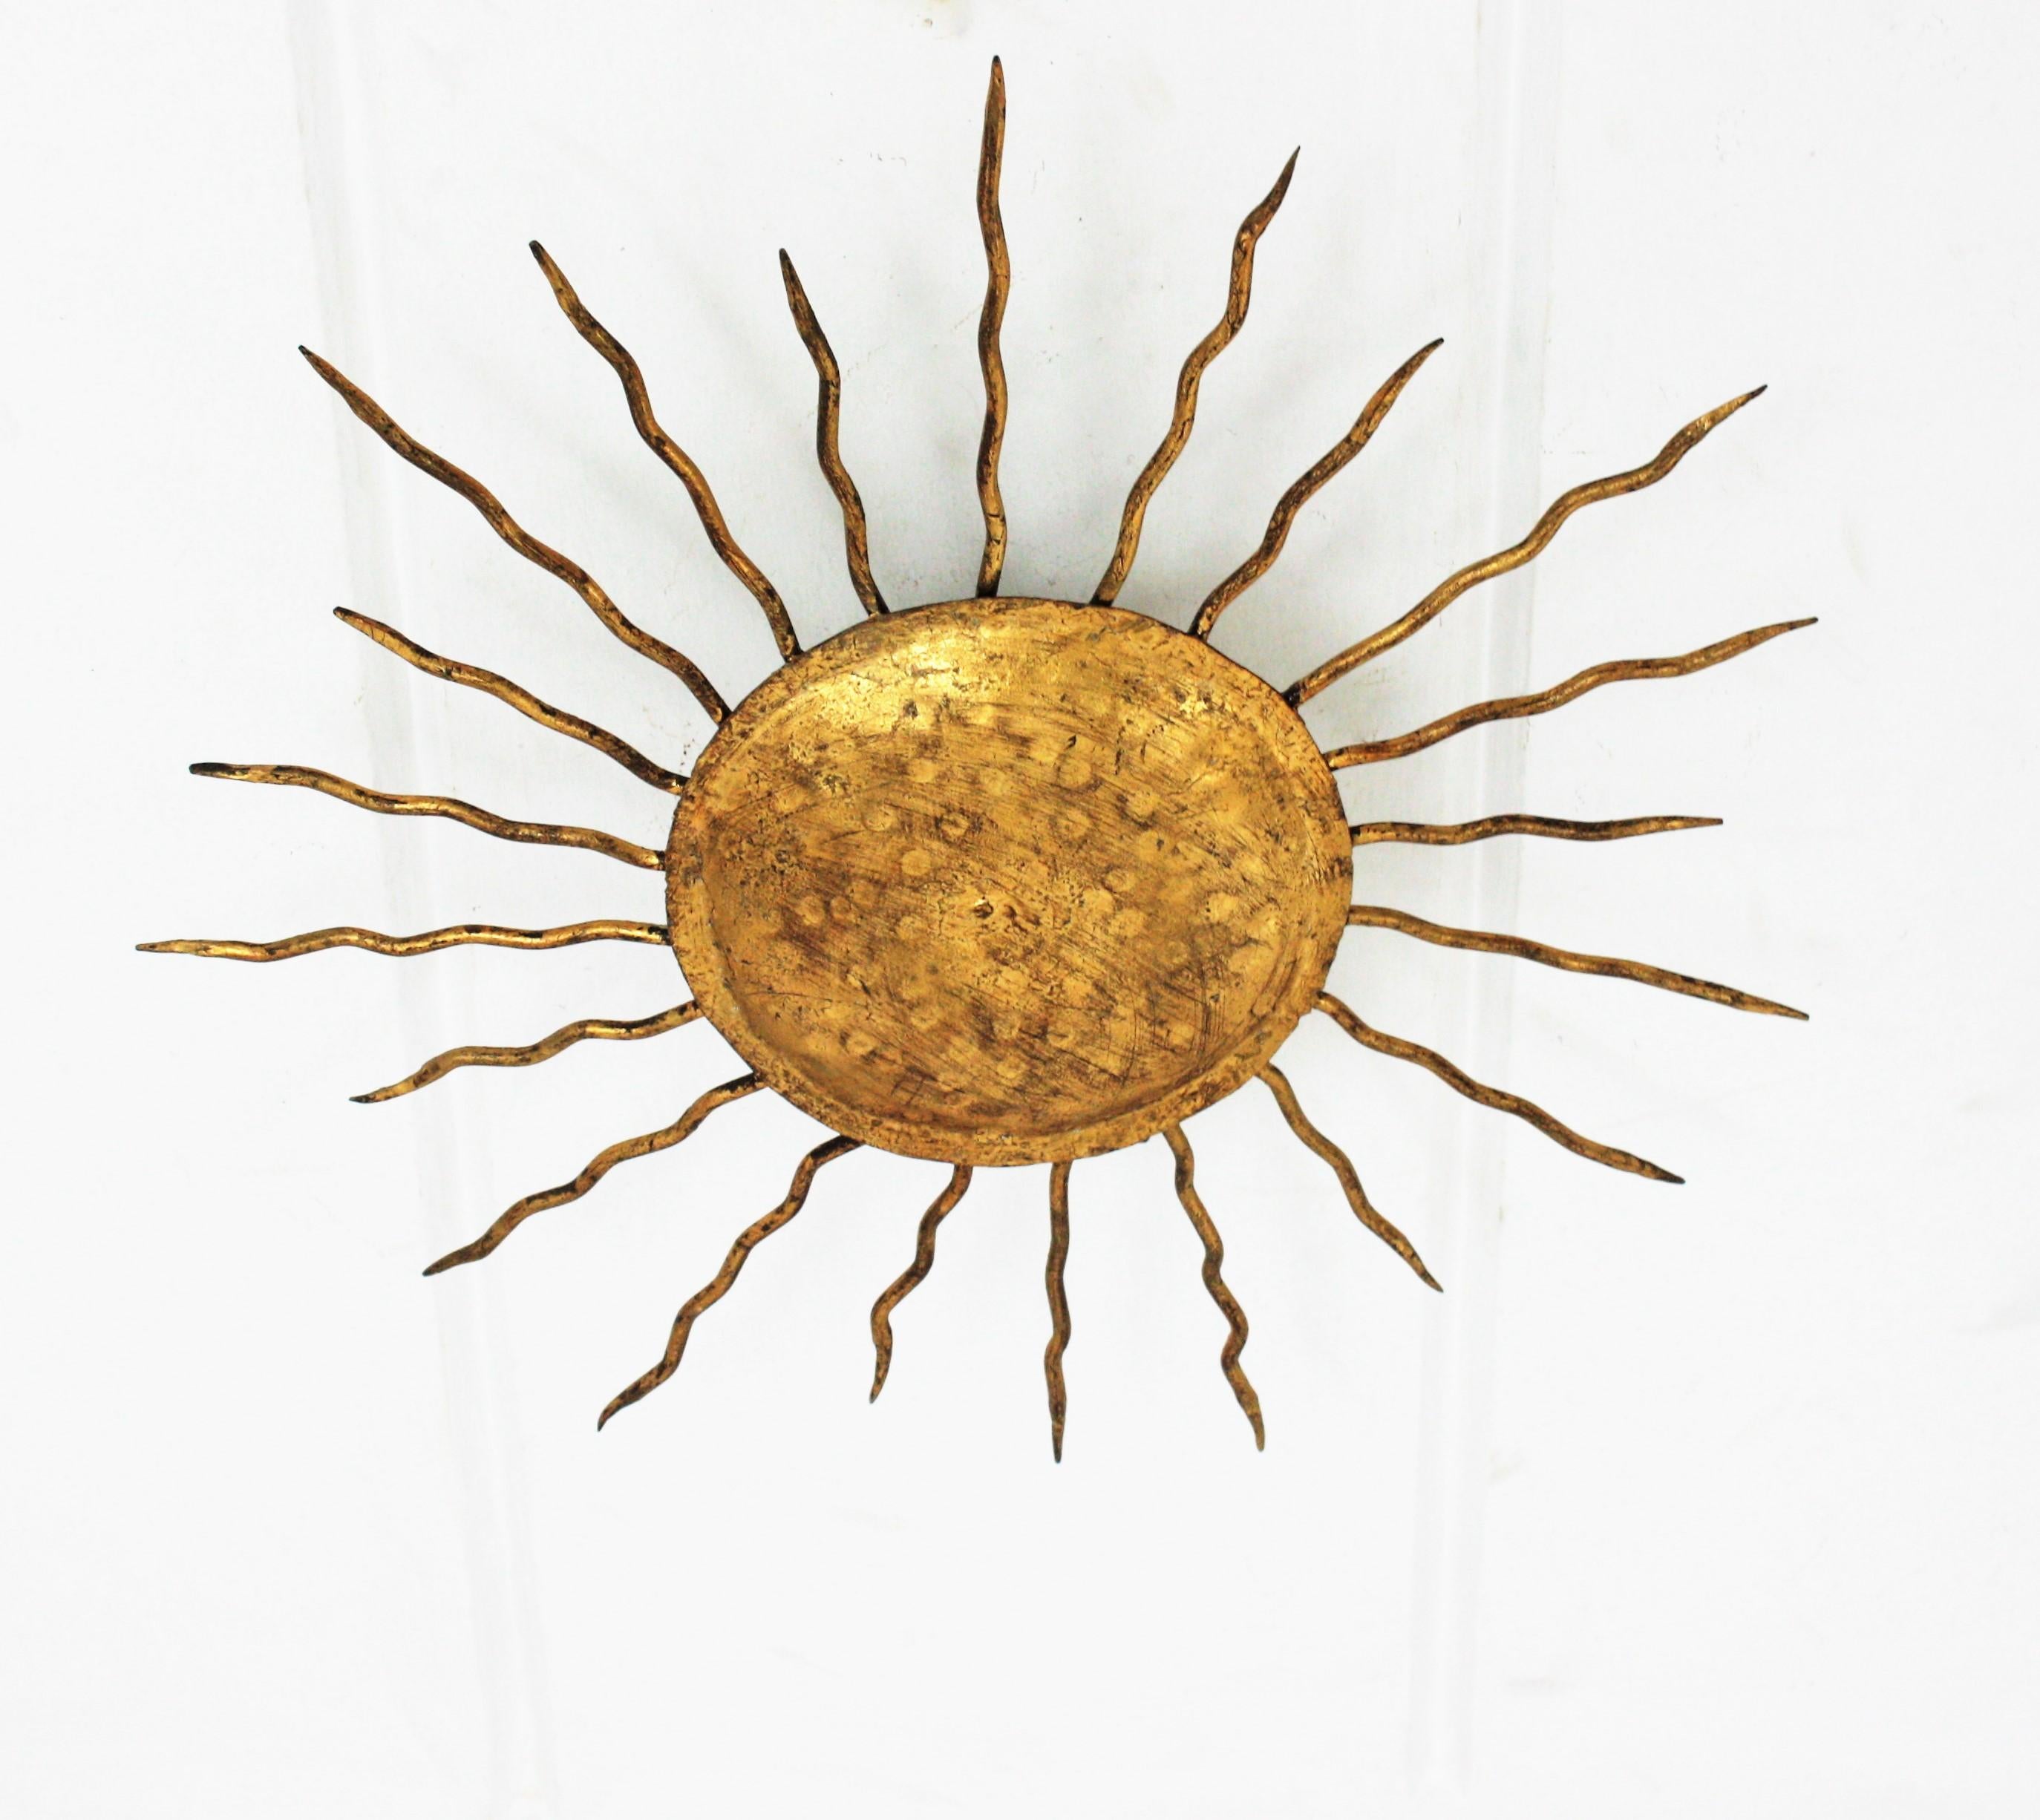 Luminaire espagnol de taille moyenne en fer doré martelé à la main, de la période brutaliste. Espagne, années 1960.
La sphère centrale est entourée de rayons de fer bouclés de deux tailles différentes. Magnifique comme plafonnier, applique murale